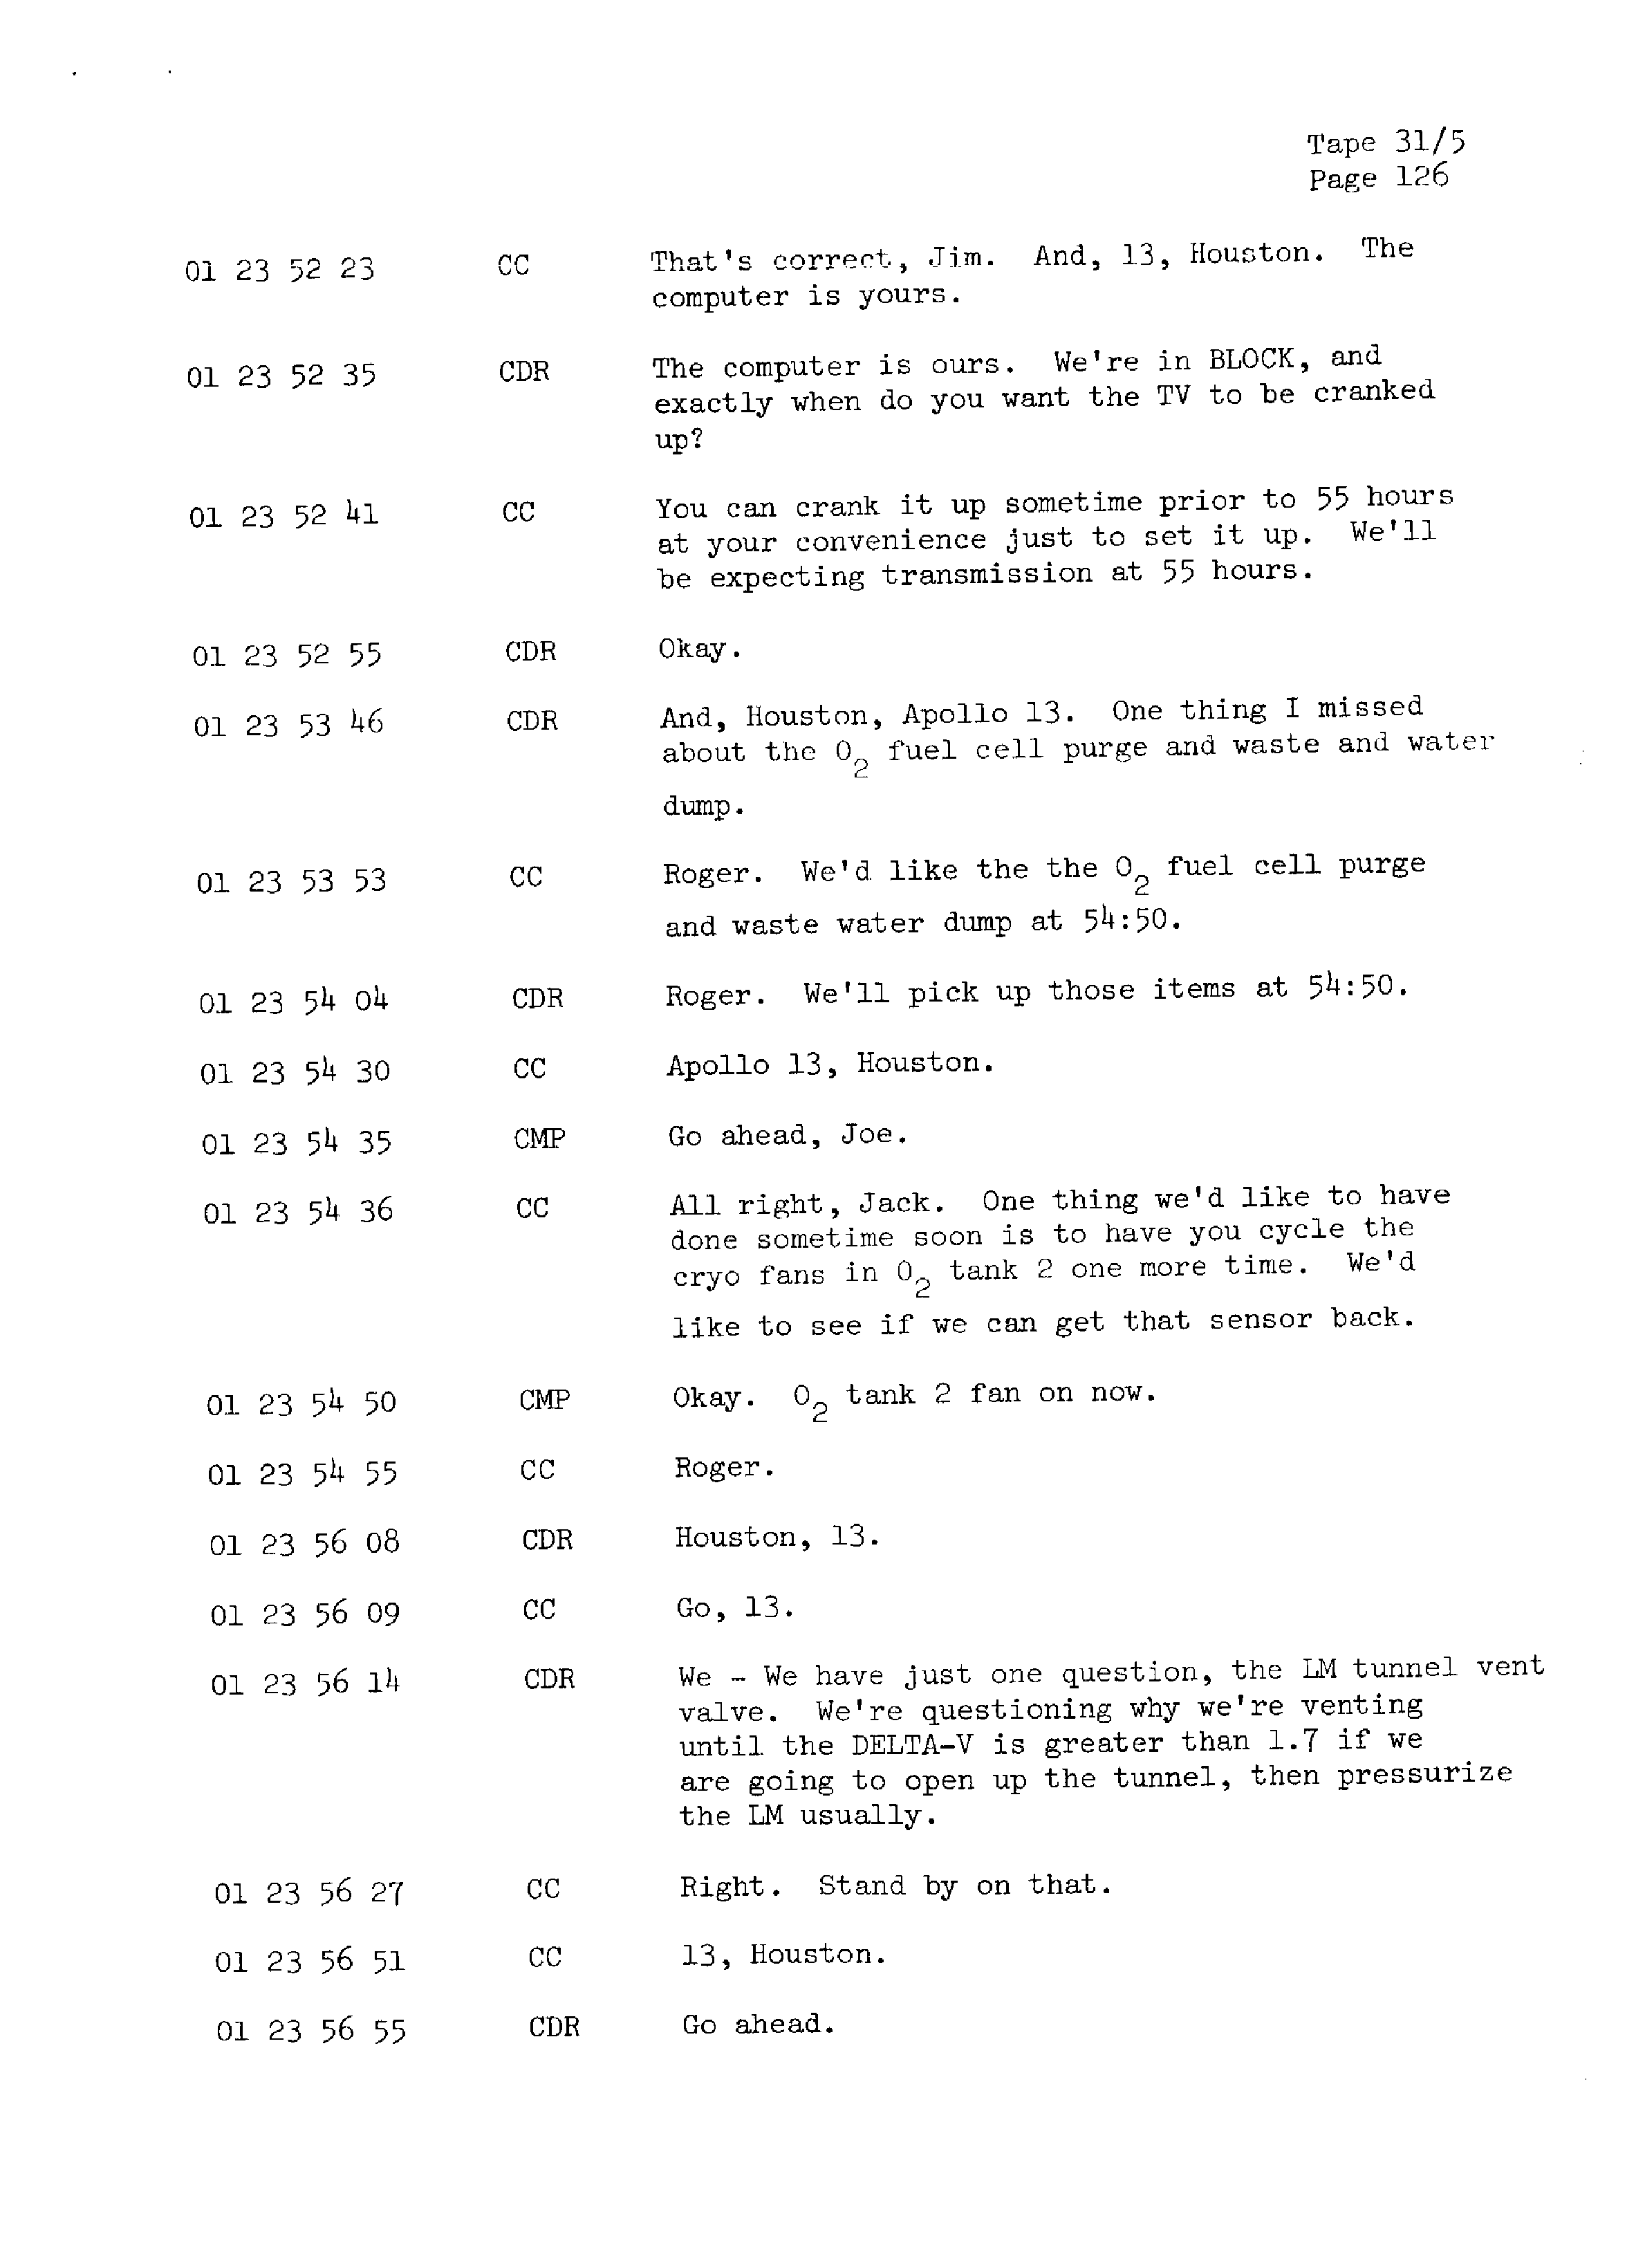 Page 133 of Apollo 13’s original transcript